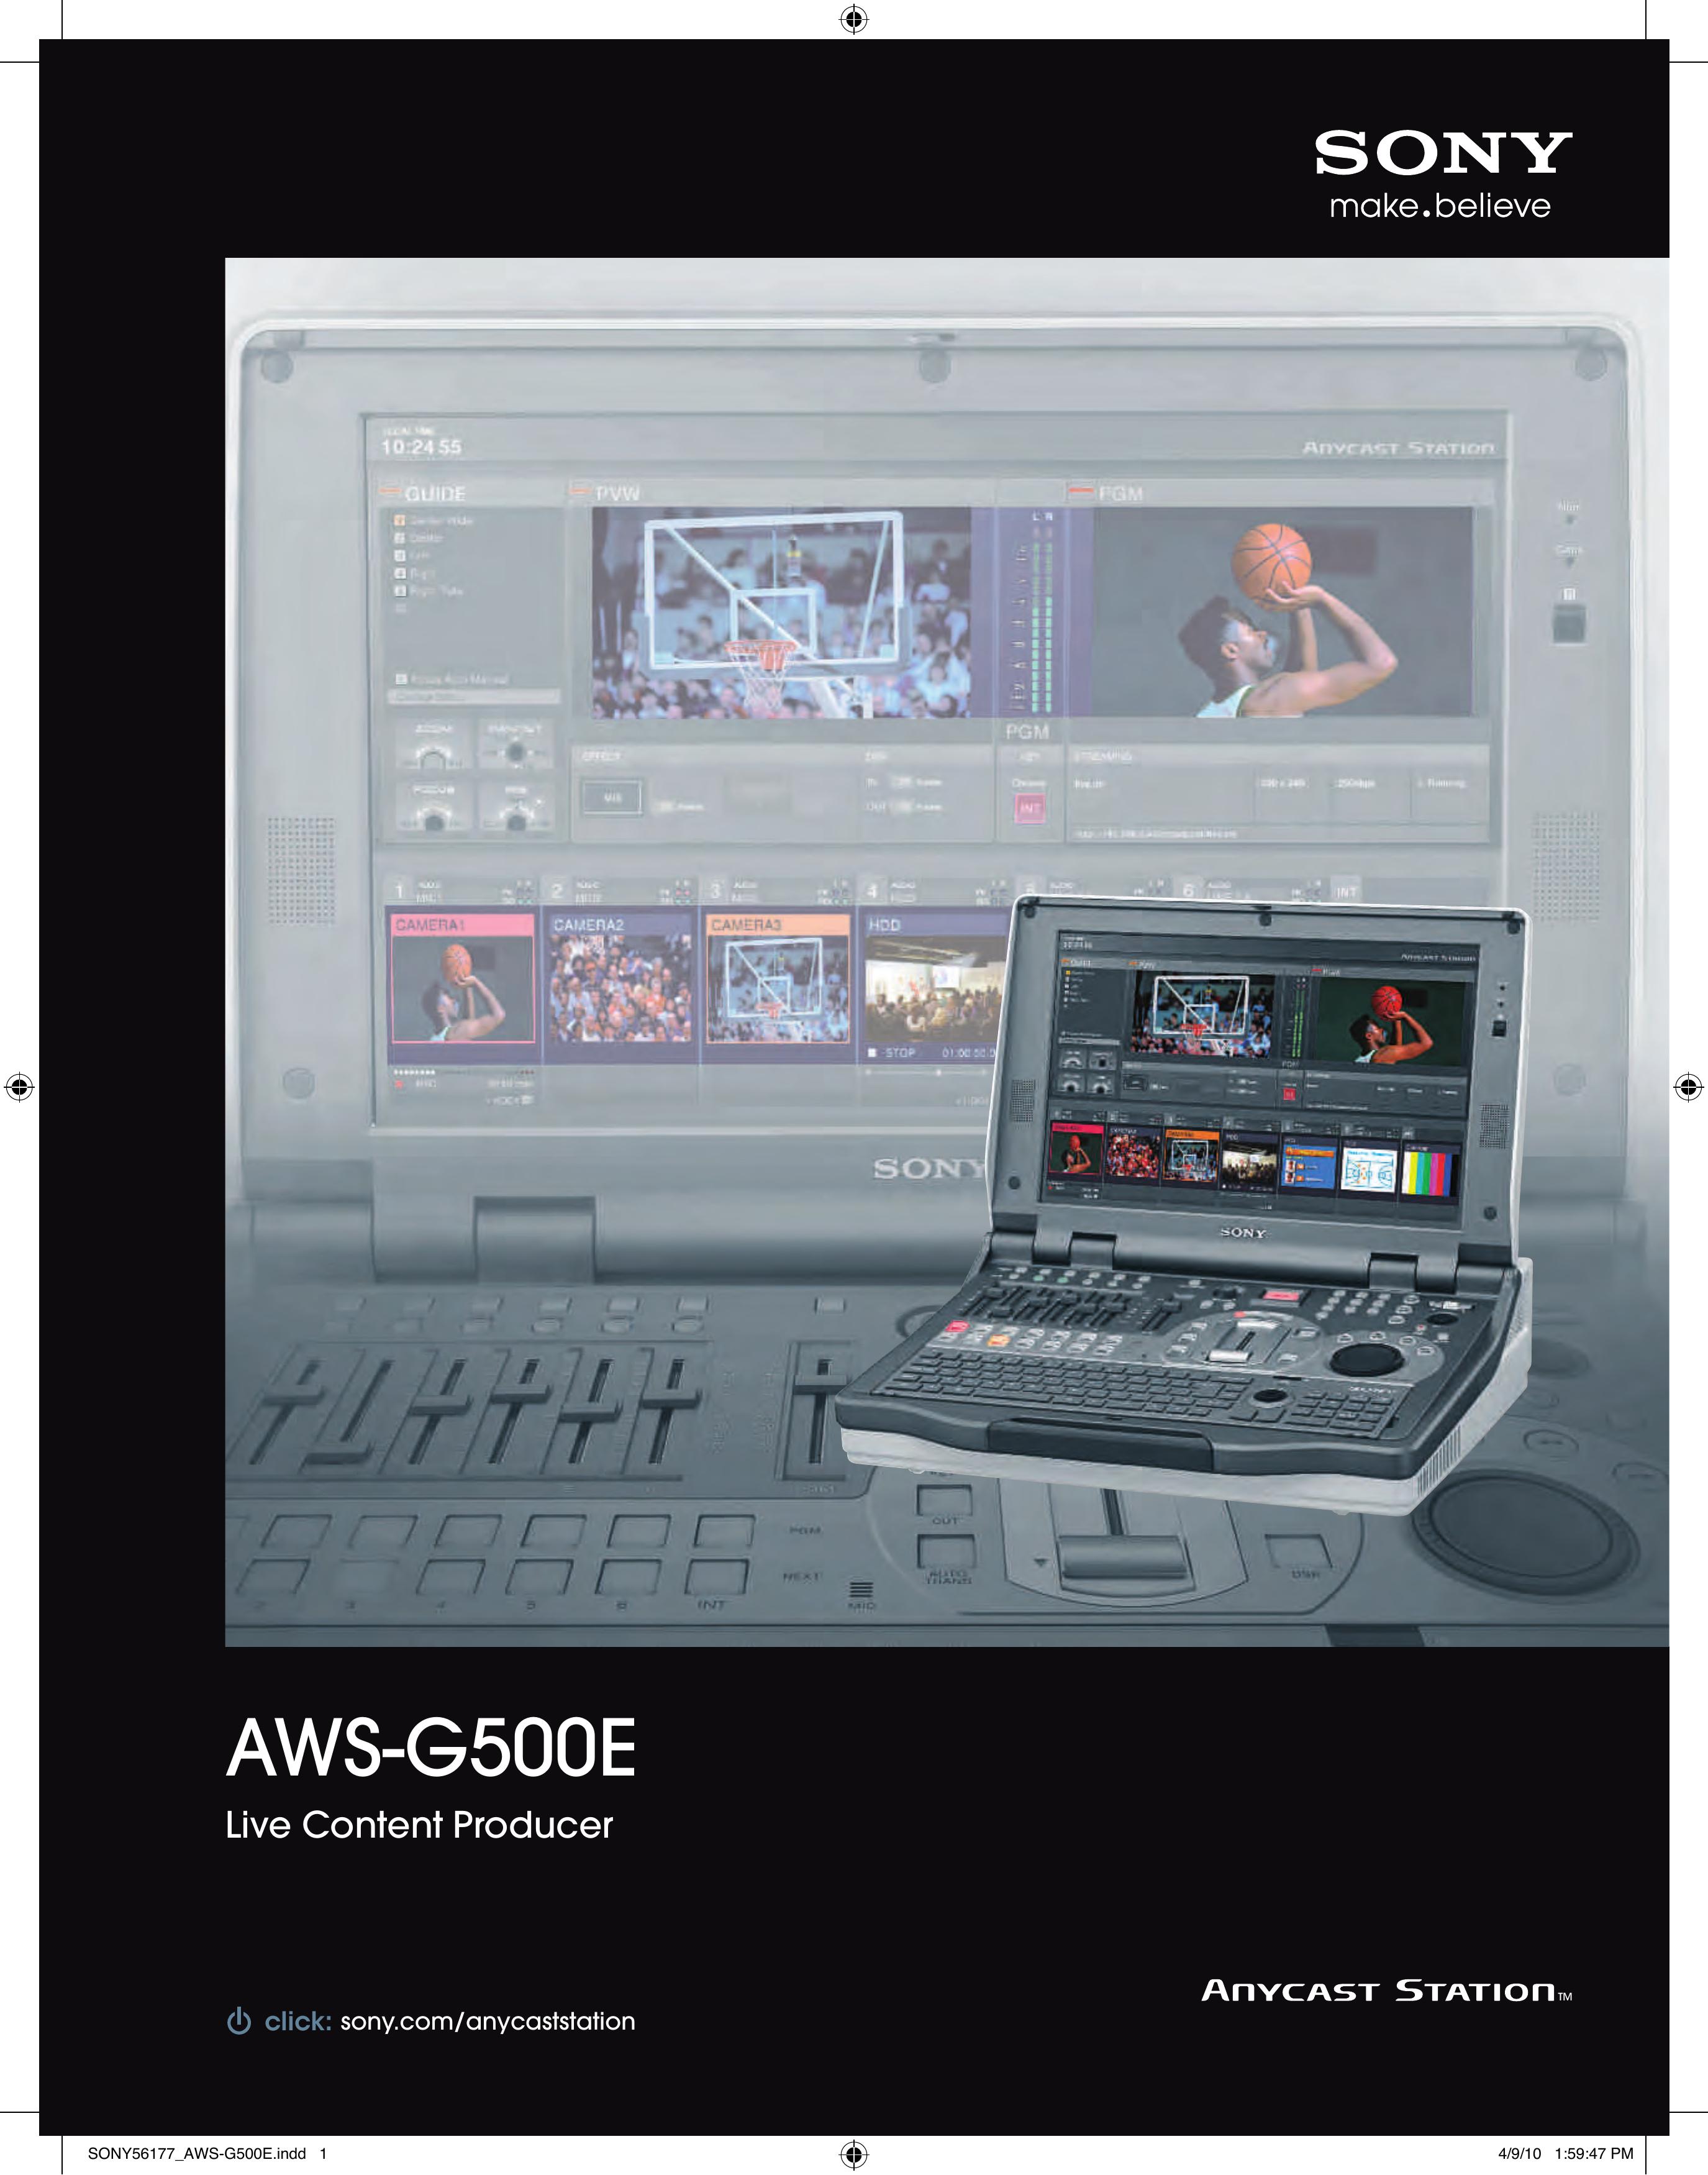 Sony AWS-G500E Music Mixer User Manual